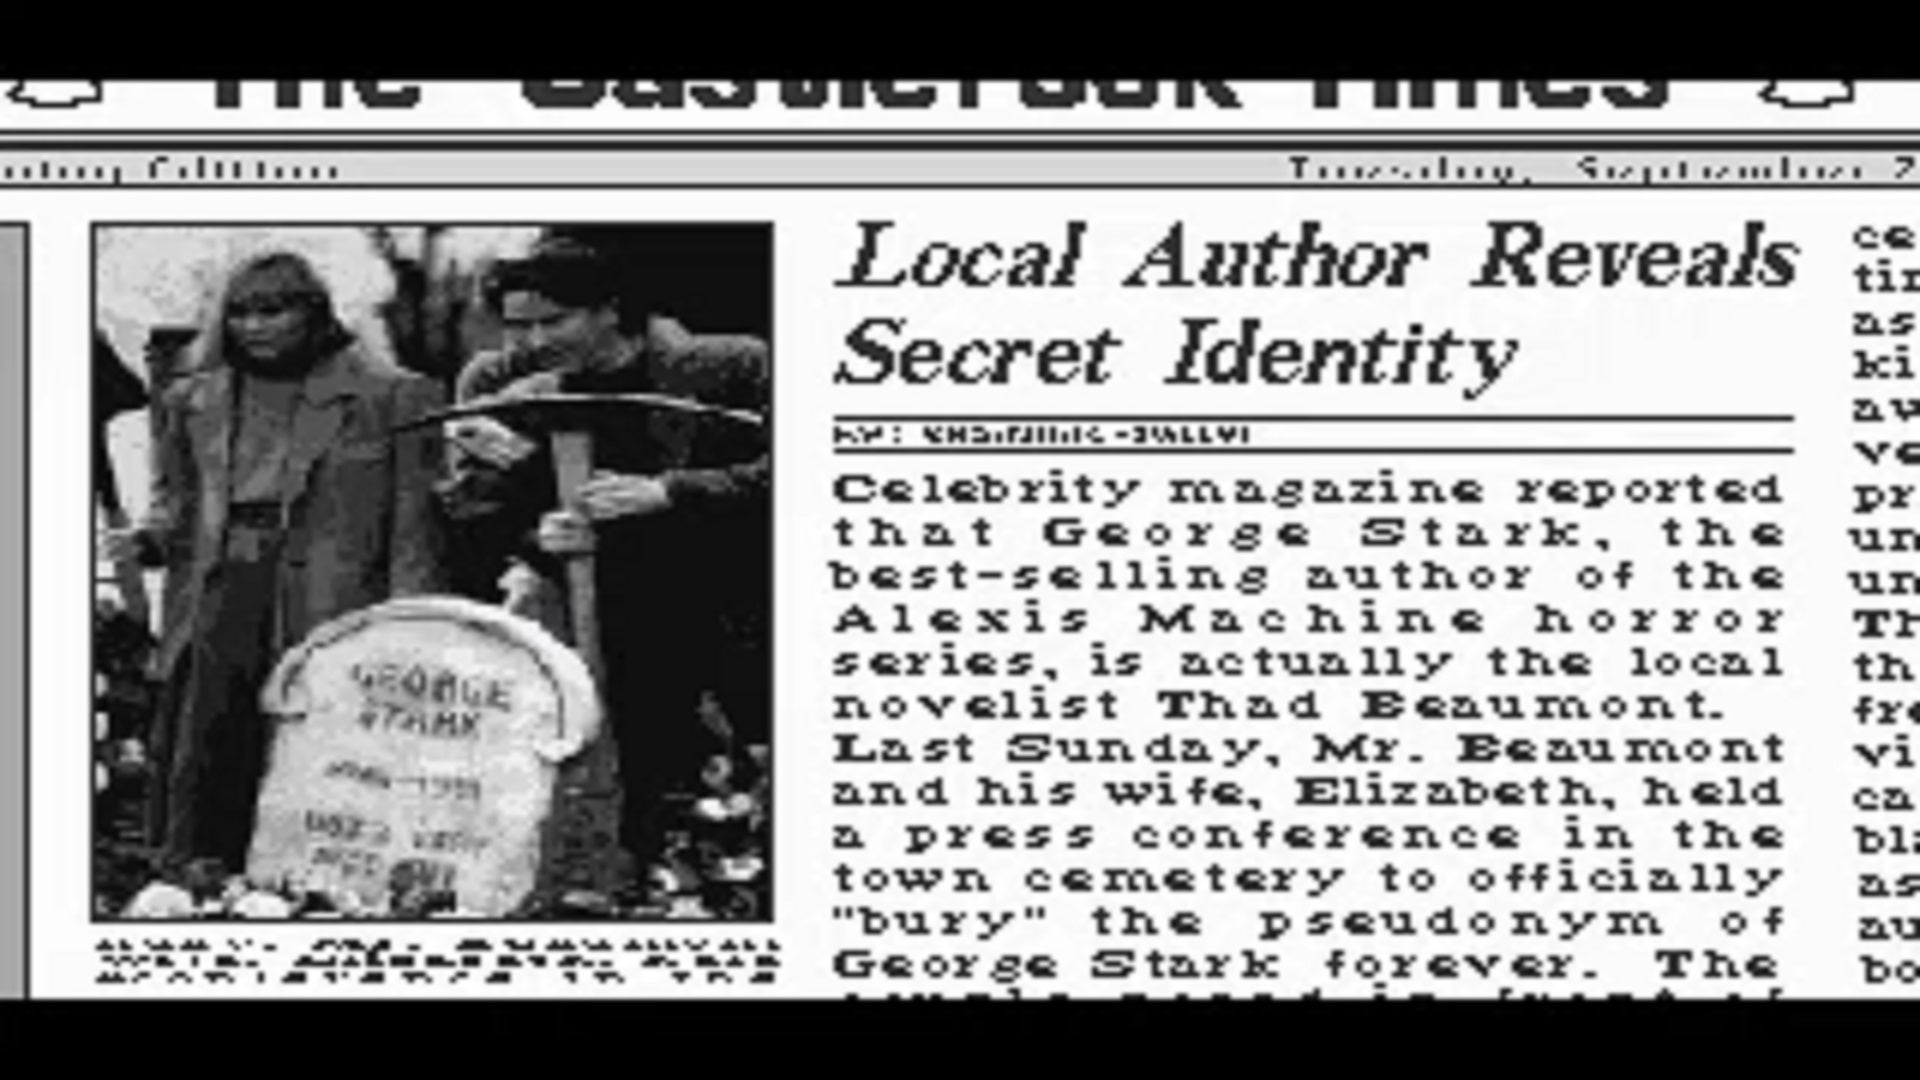 قصاصة صحيفة من لعبة التأشير والنقر في أوائل التسعينيات. العنوان يقرأ "كاتب محلي يكشف عن هويته السرية".